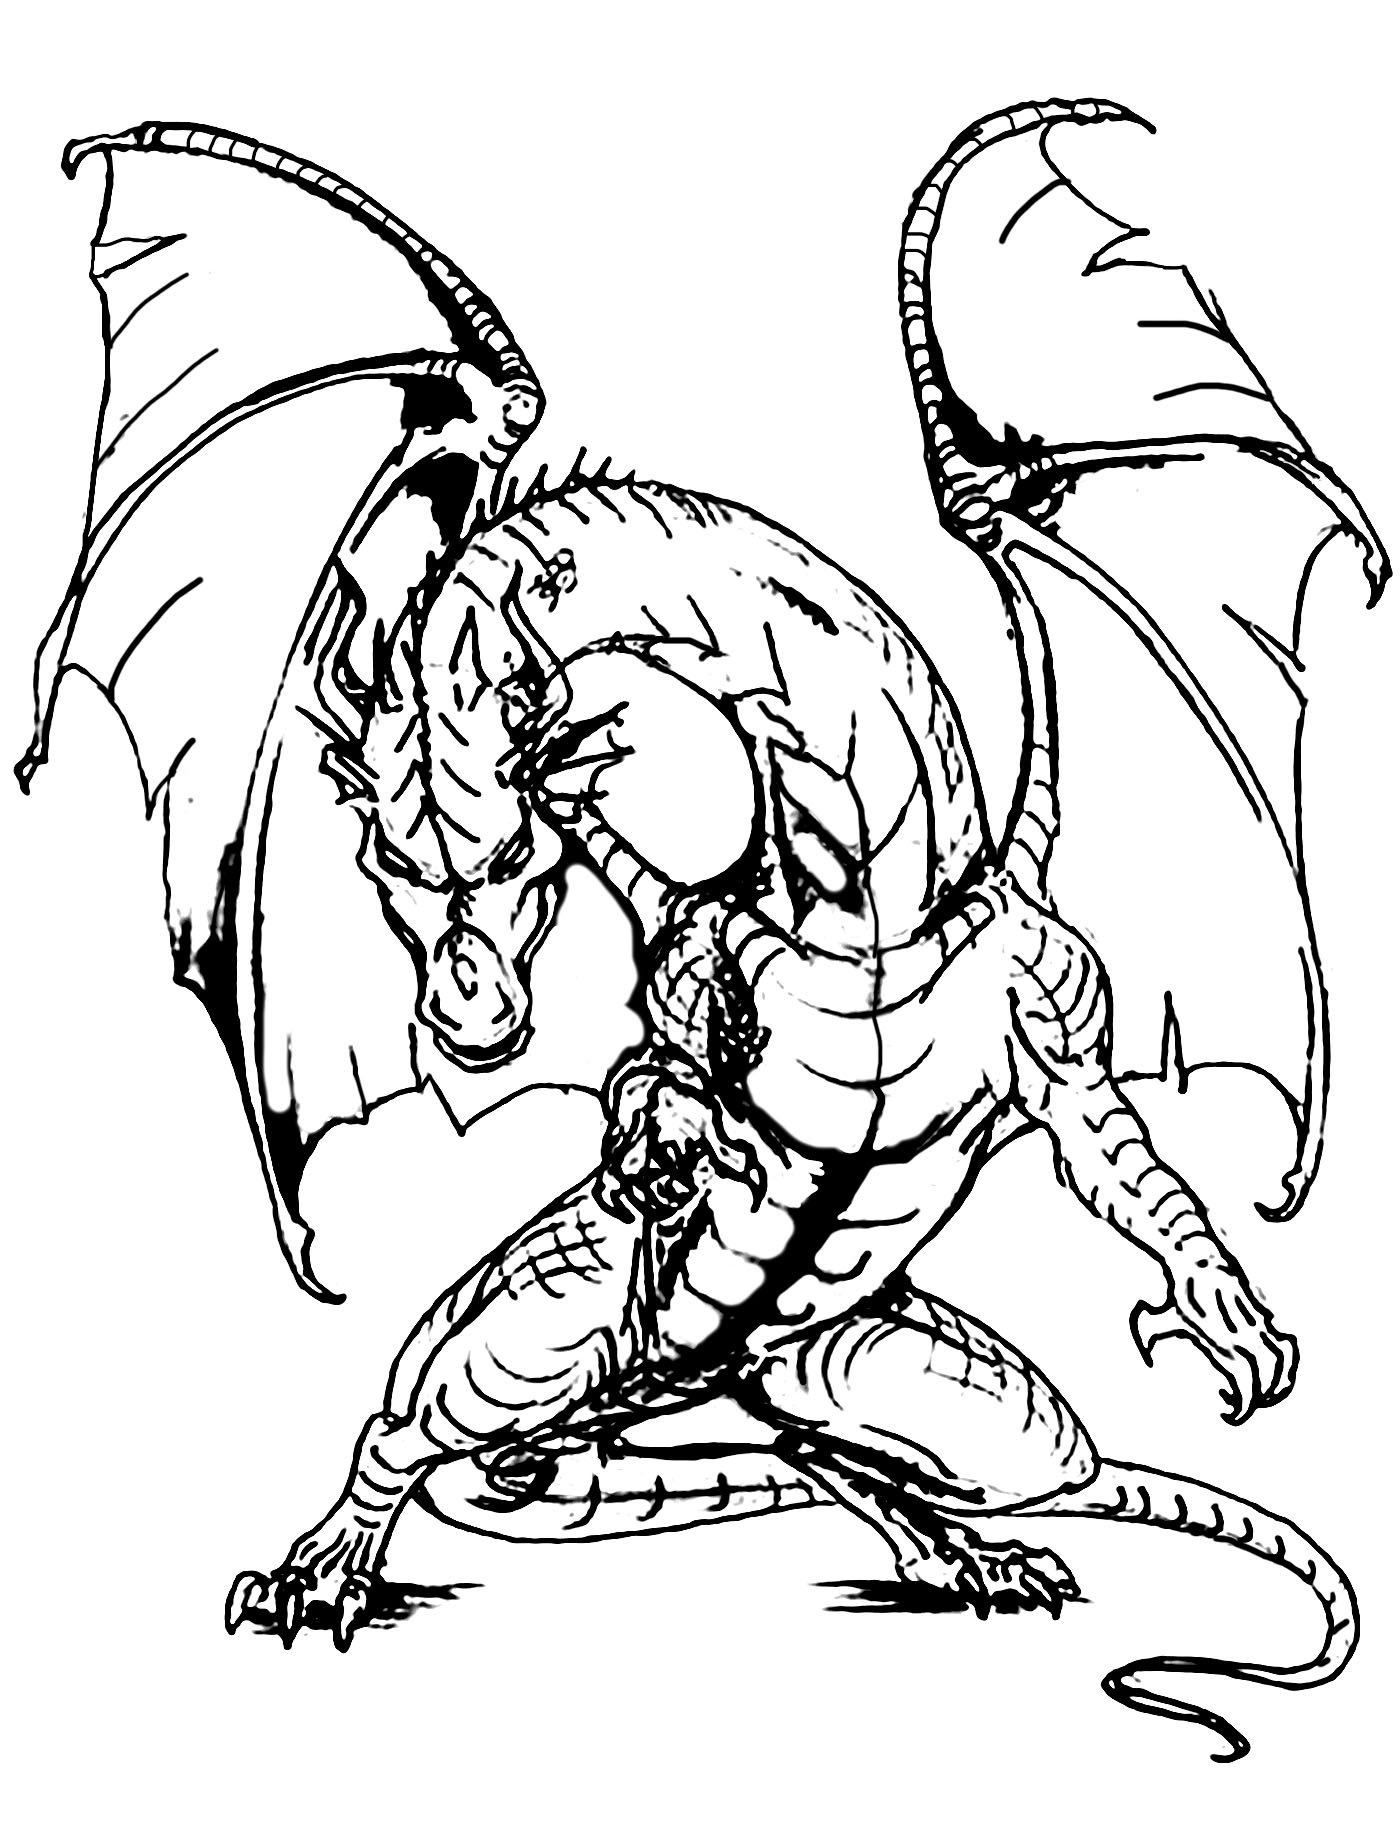 Dragon Geant - Dragons - Coloriages Difficiles Pour Adultes destiné Dessin Un Dragon 